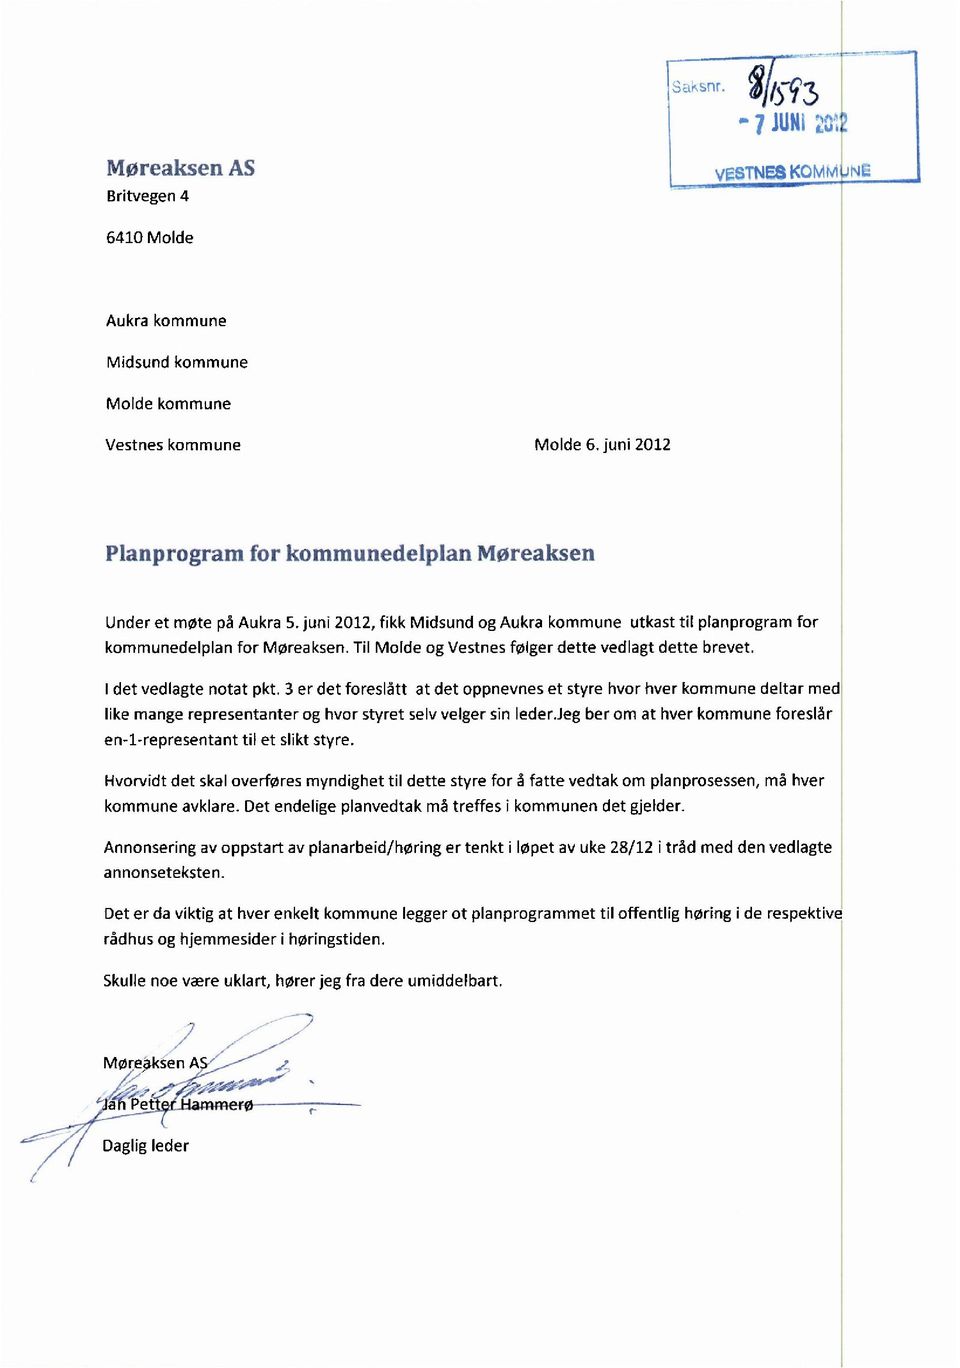 Til Molde og Vestnes følger dette vedlagt dette brevet. I det vedlagte notat pkt.